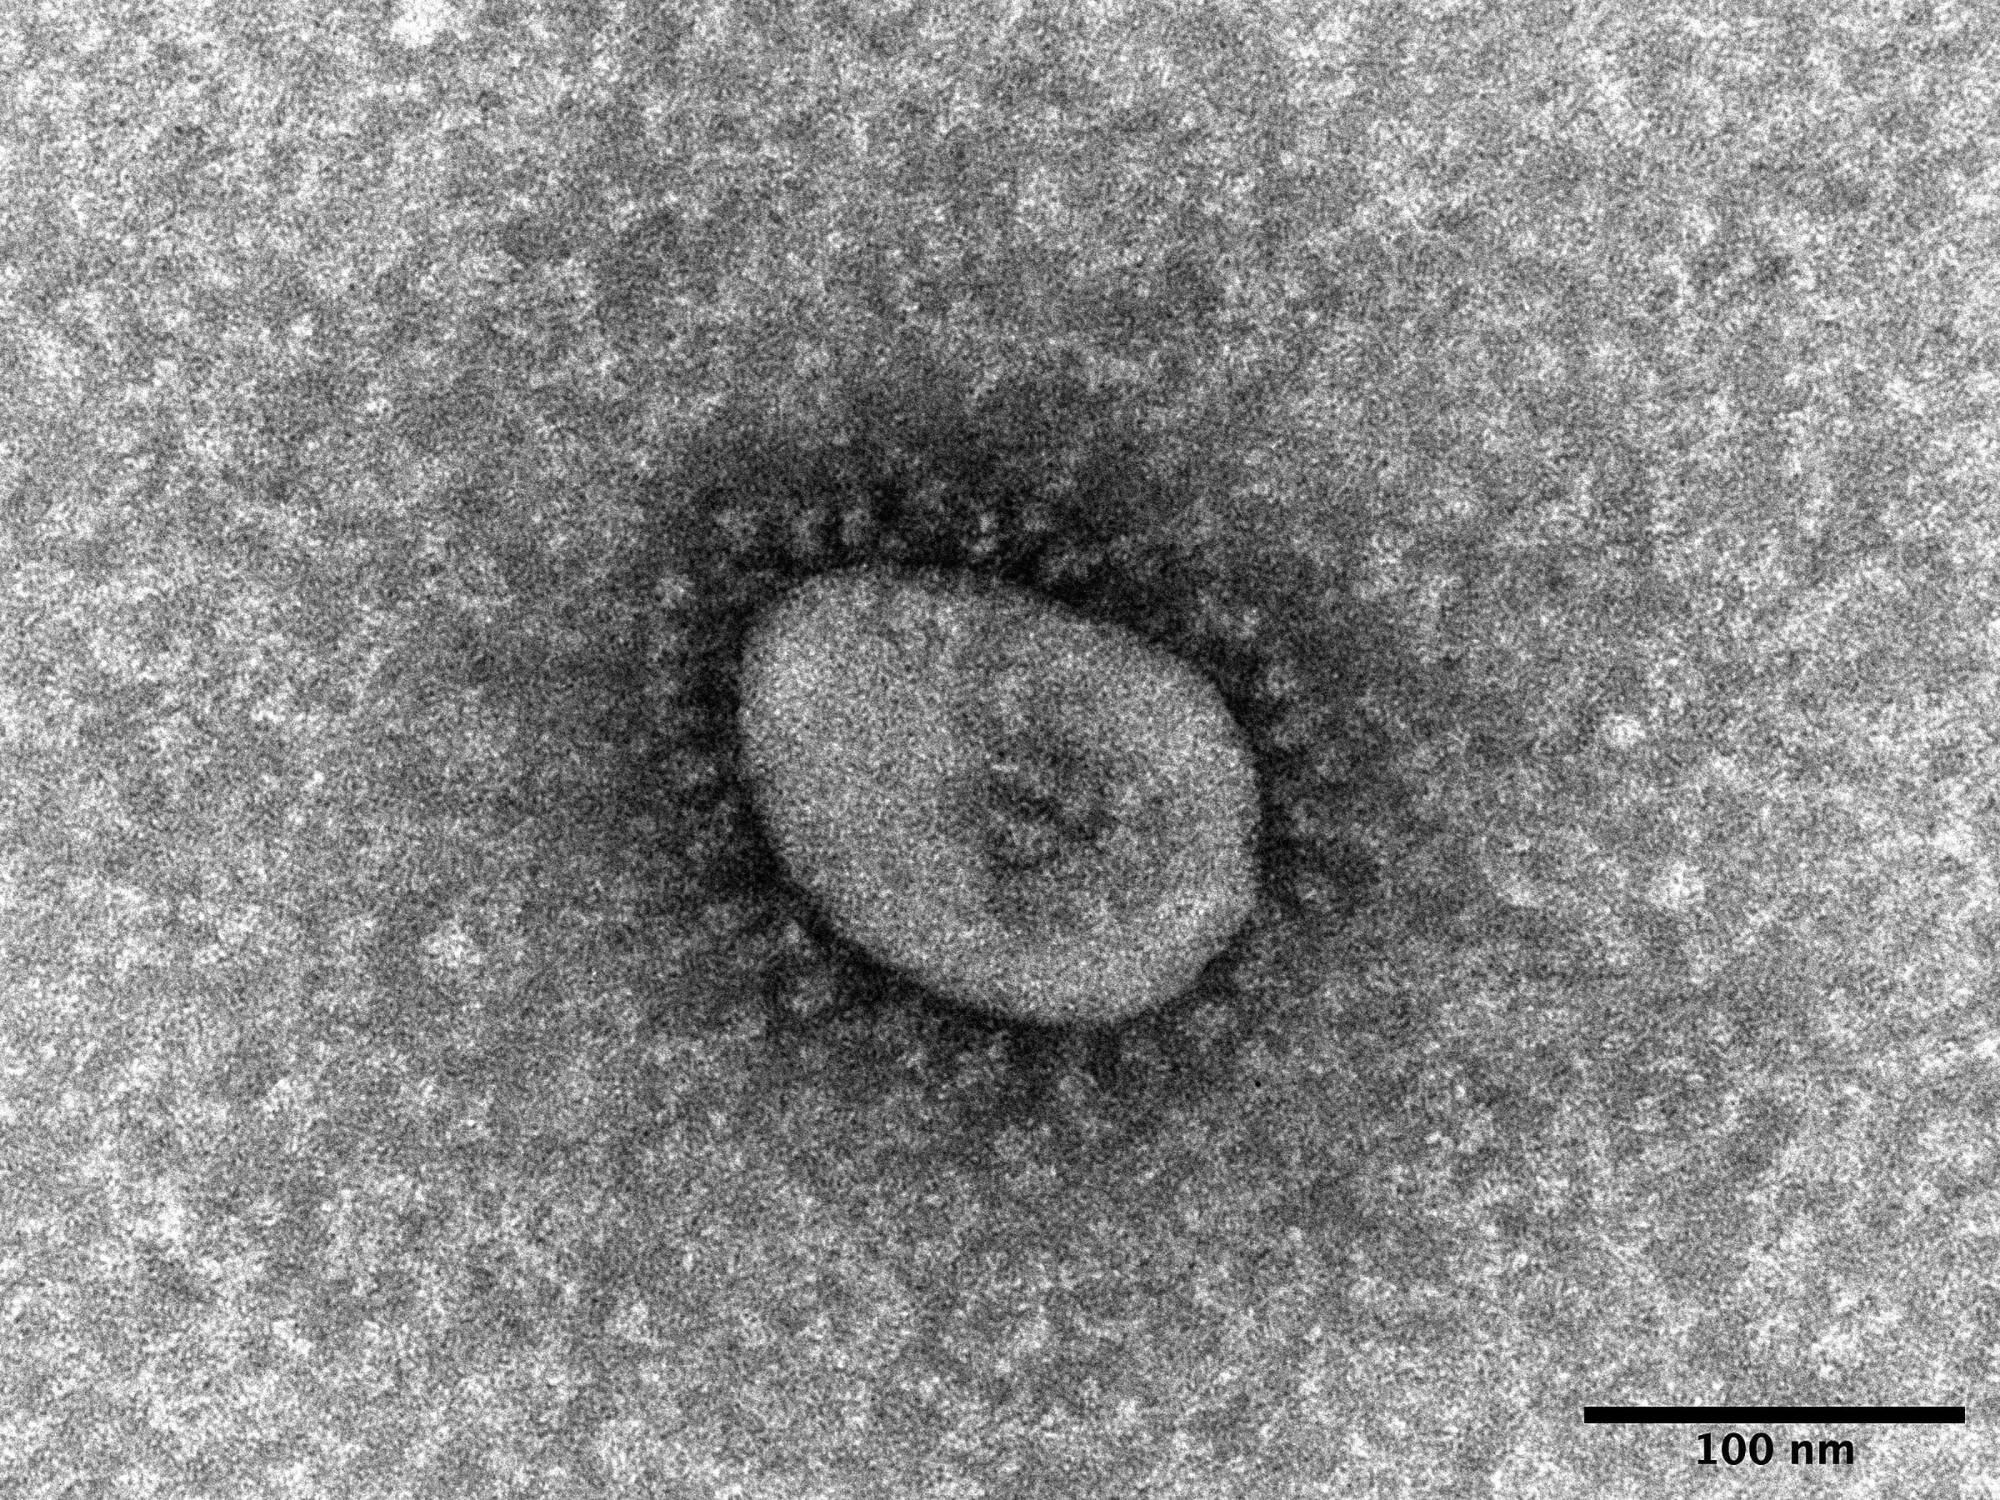 Biến thể omicron của coronavirus khi được nhìn thấy qua kính hiển vi | VIỆN BỆNH TRUYỀN NHIỄM QUỐC GIA / VIA KYODO